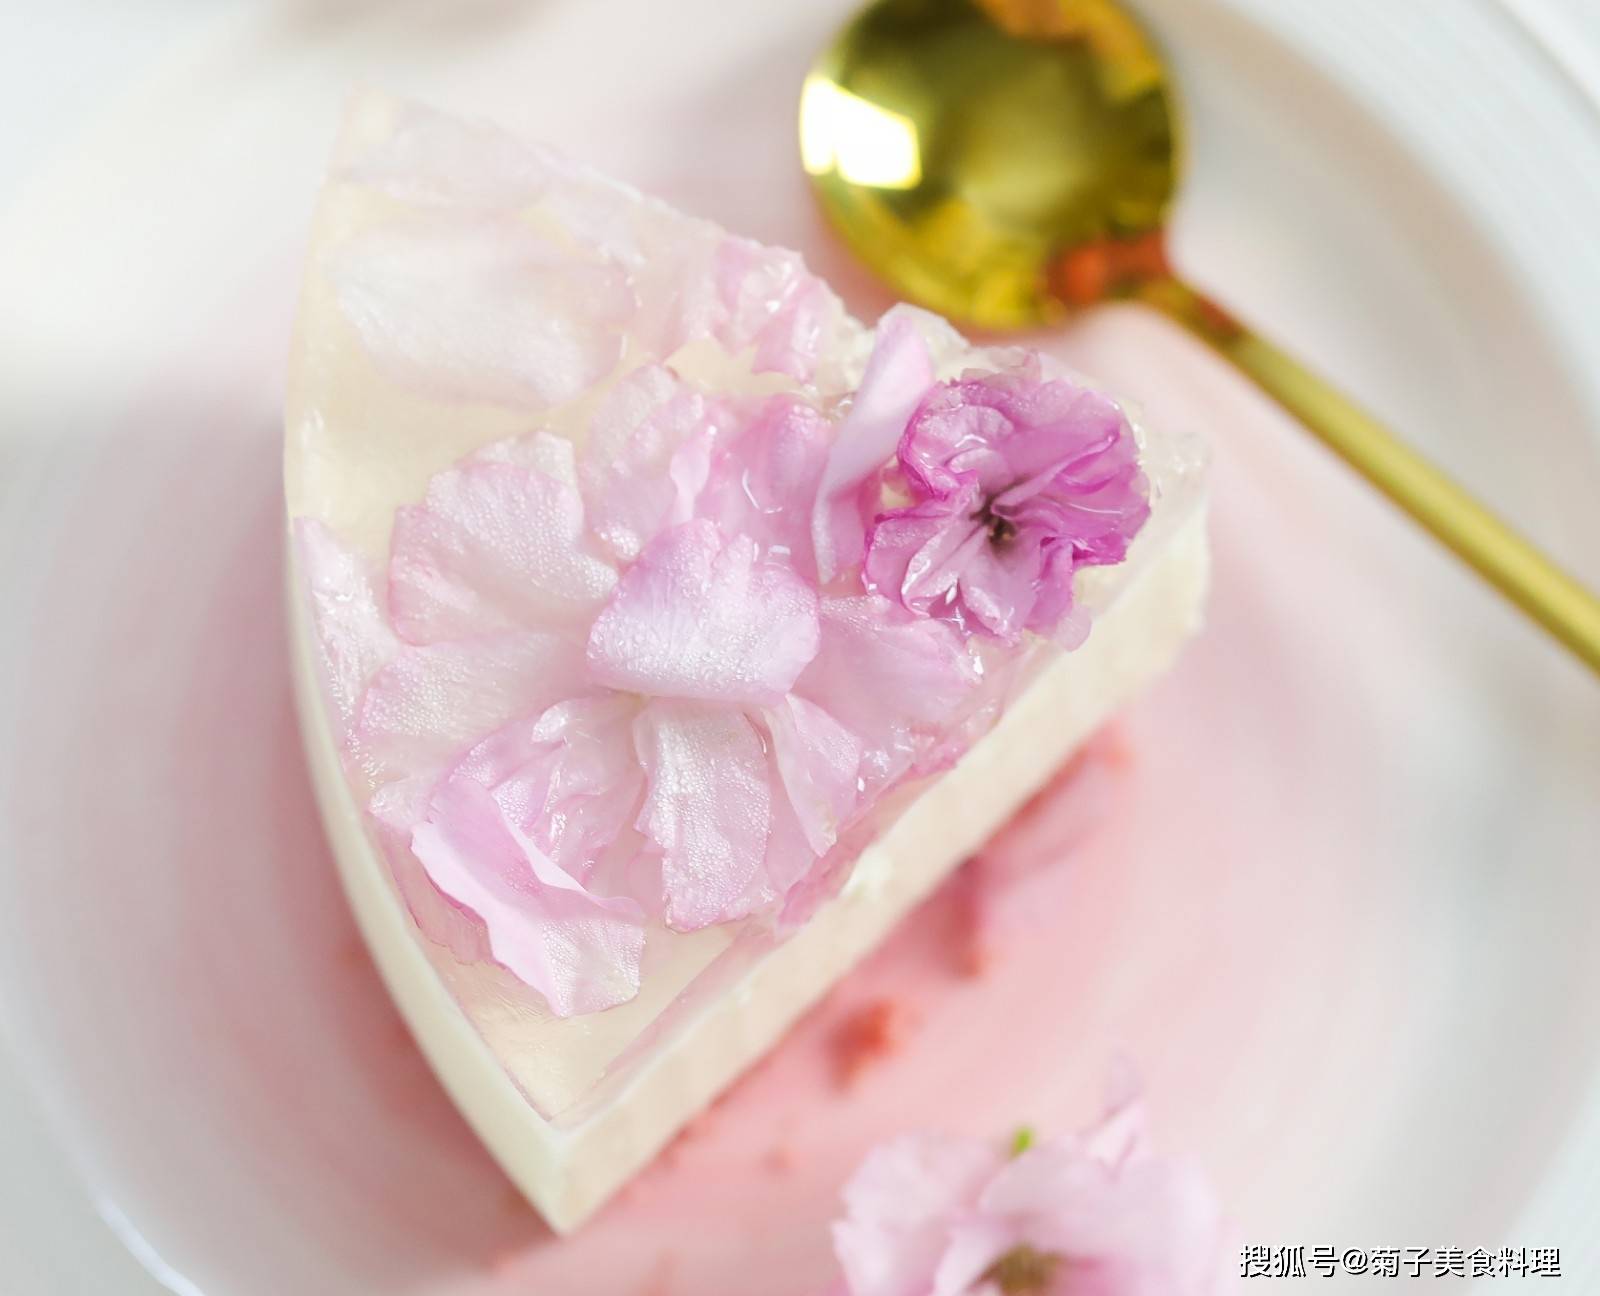 樱桃奶酪蛋糕的做法_【图解】樱桃奶酪蛋糕怎么做如何做好吃_樱桃奶酪蛋糕家常做法大全_蓝纹乳酪_豆果美食